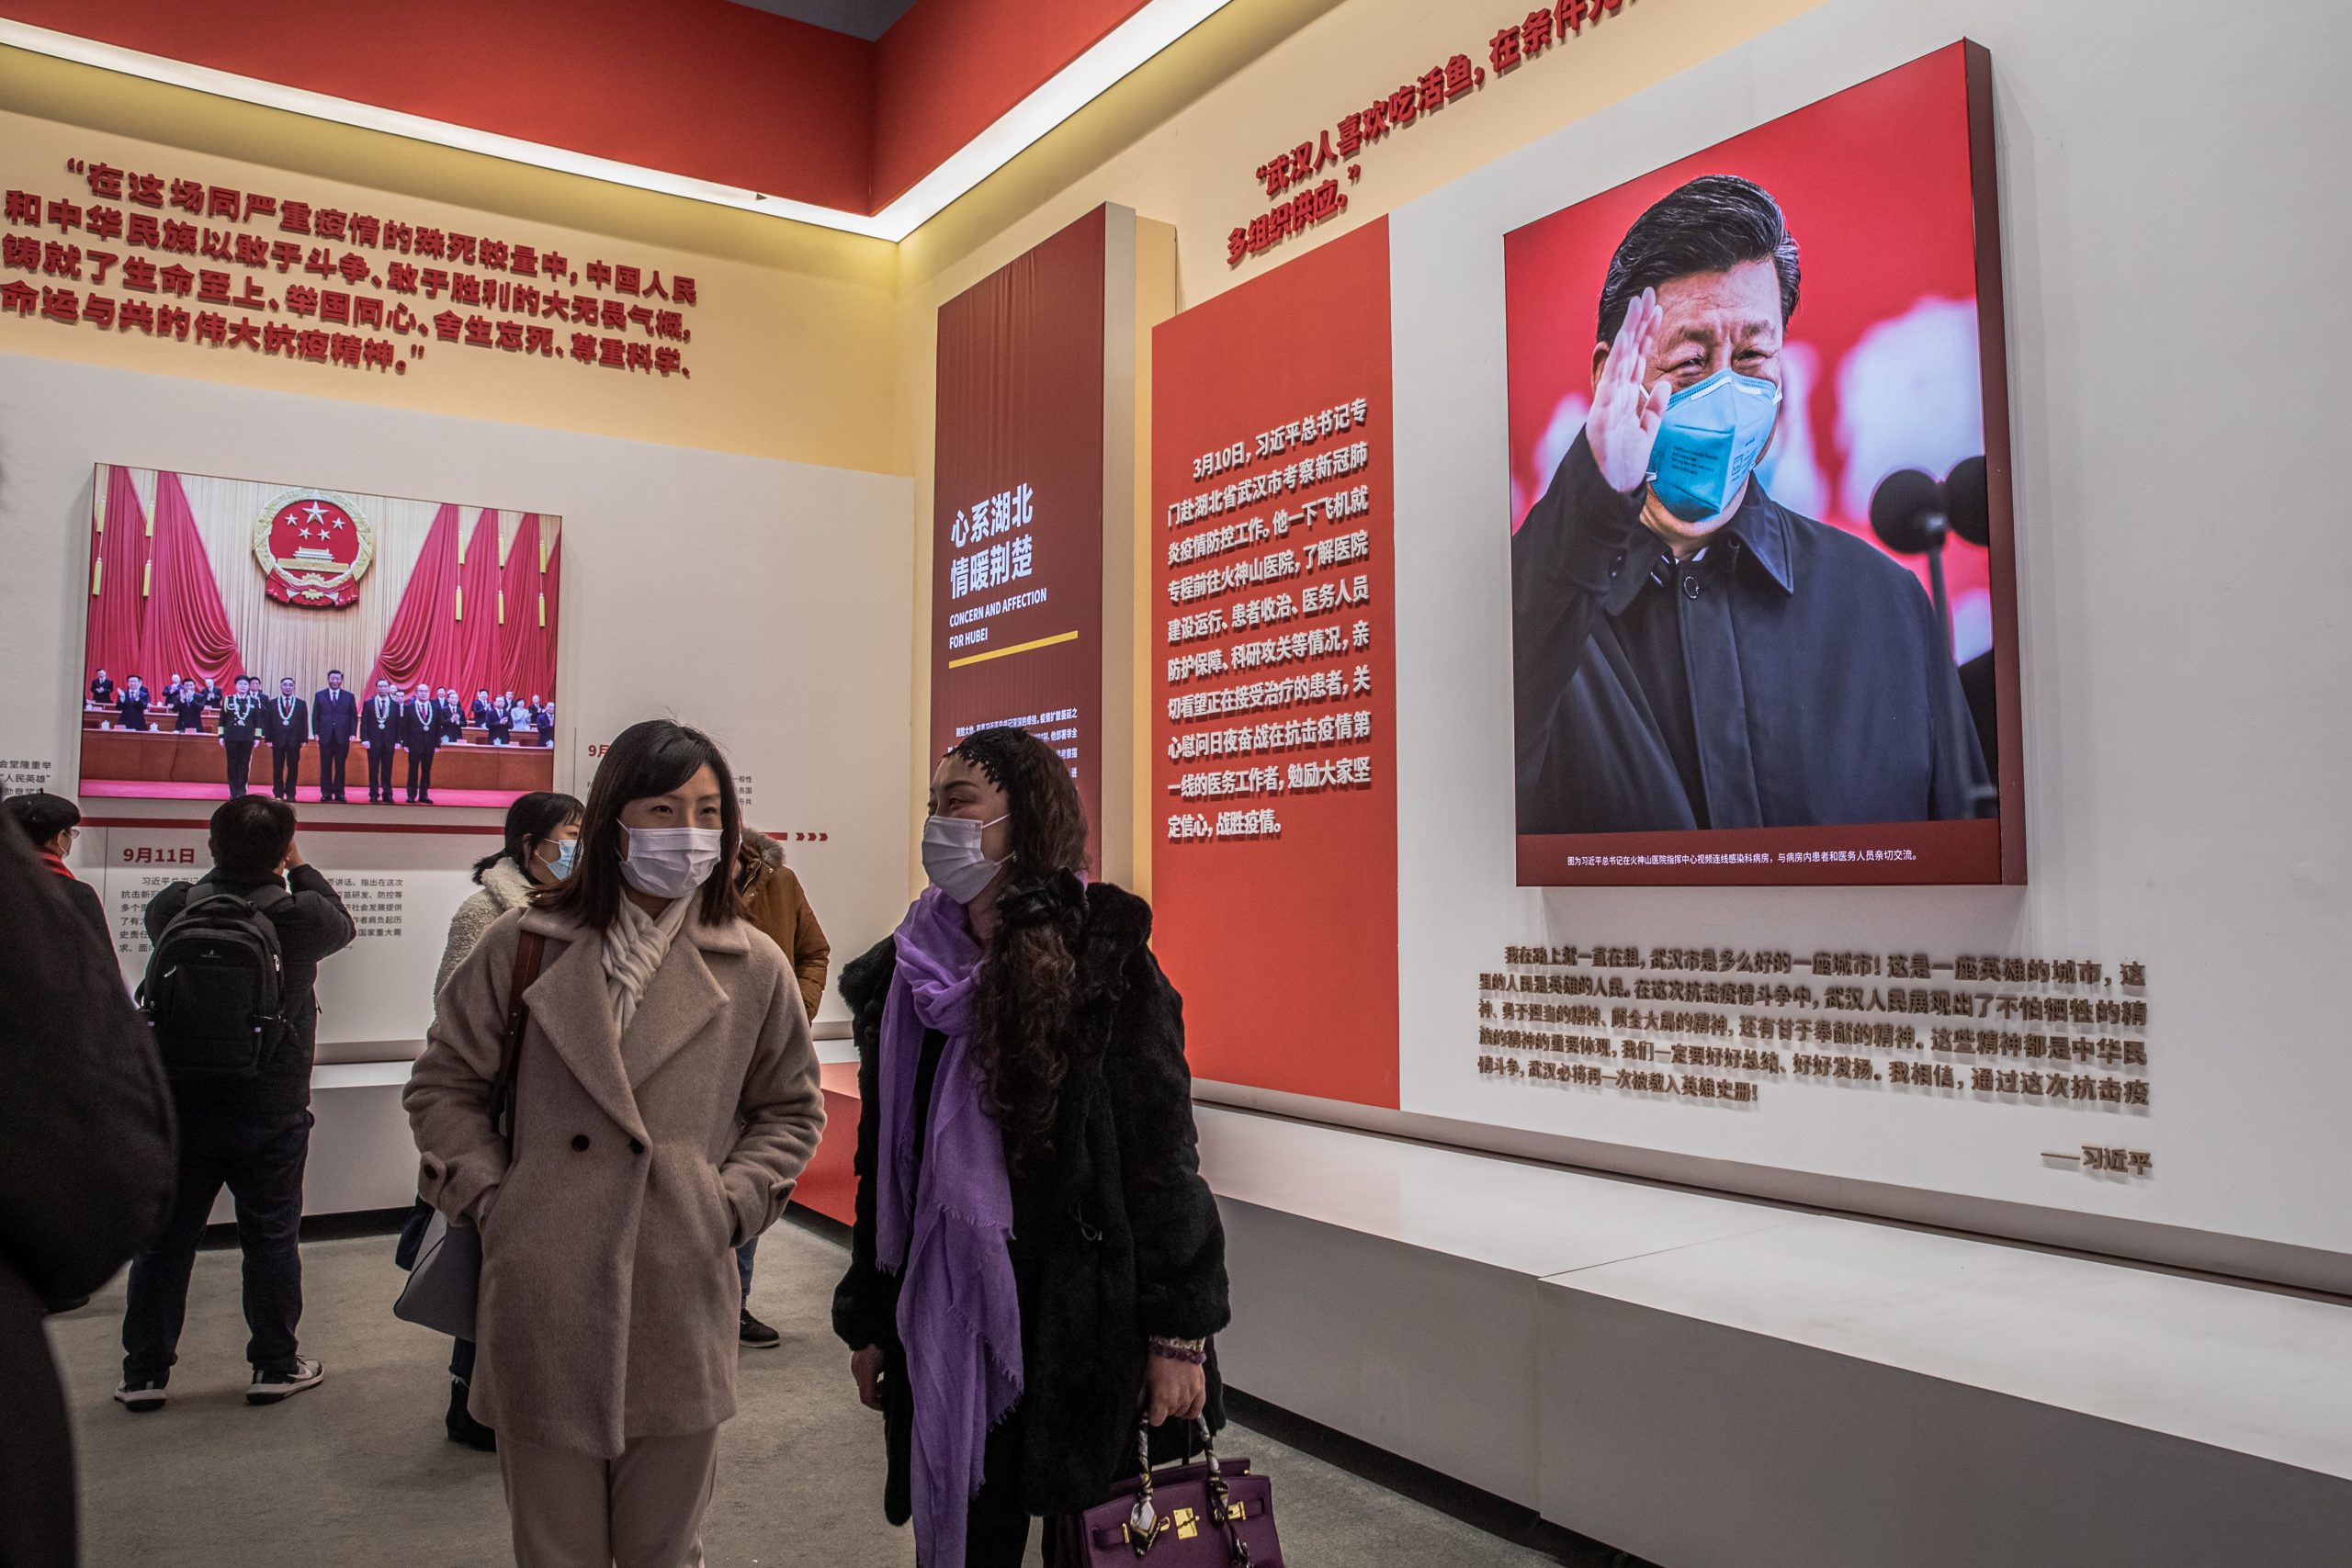 Tentoonstelling over de coronapandemie in Beijing.